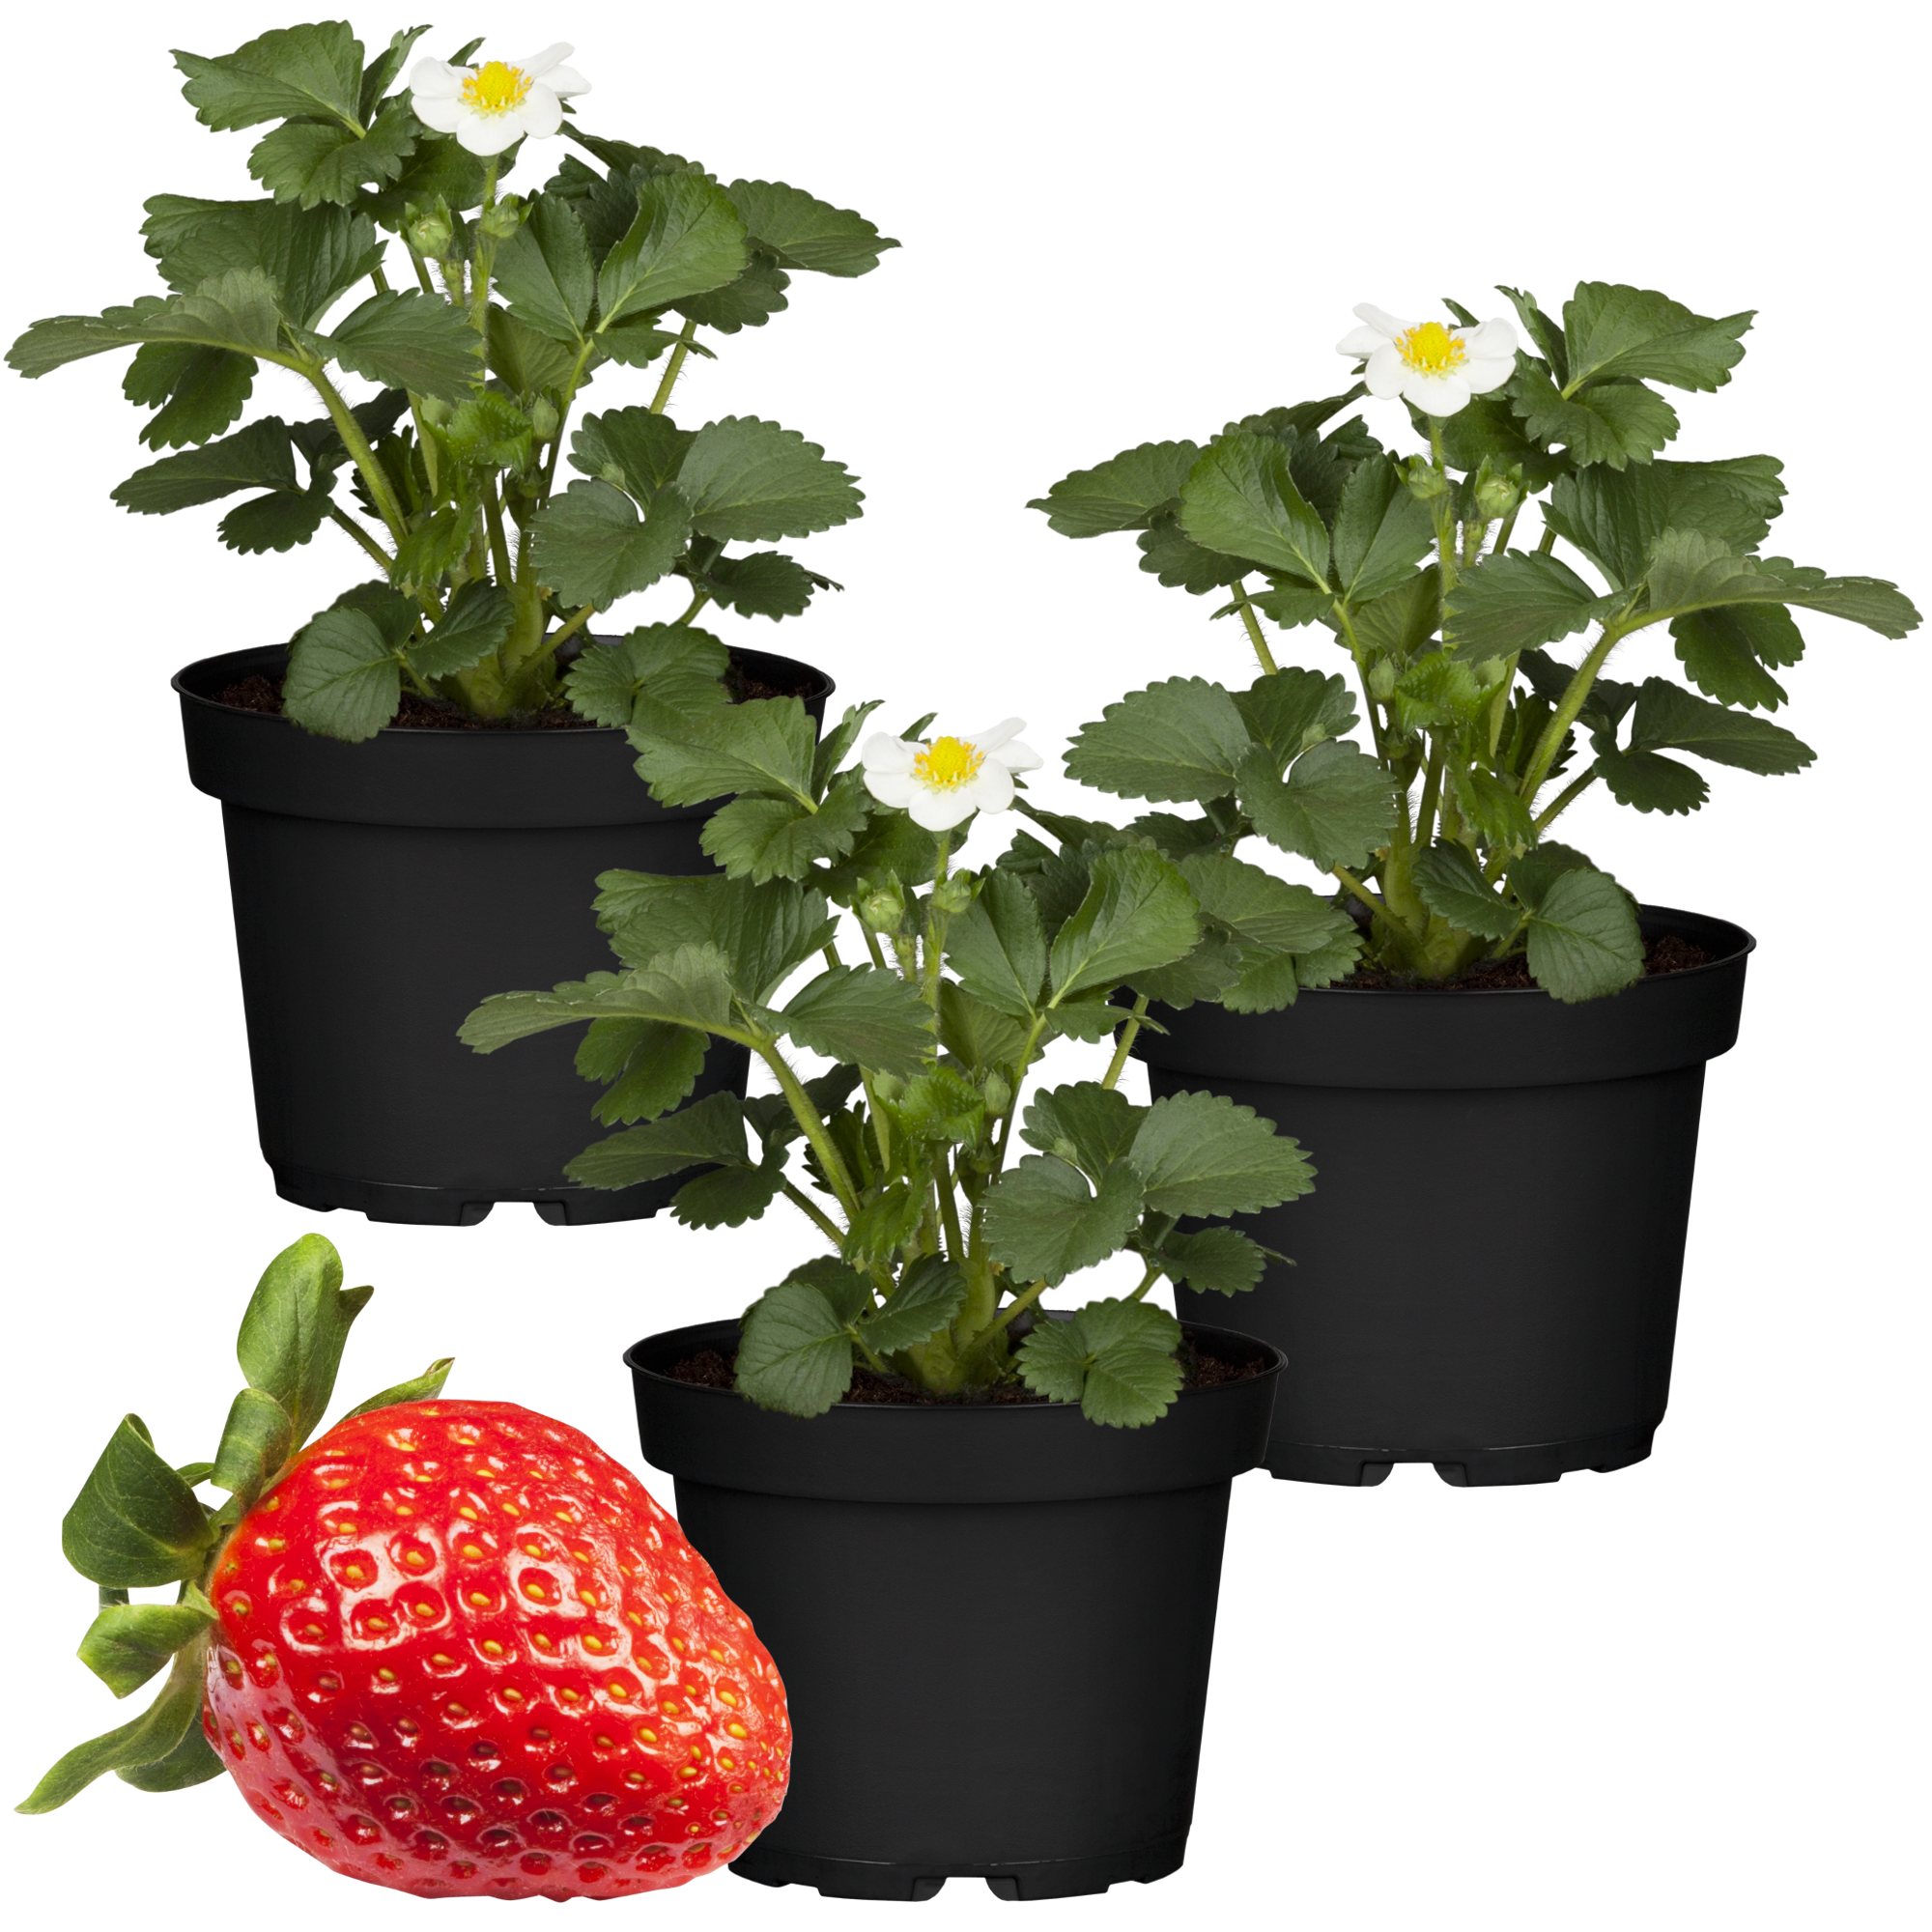 Erdbeere 'Elan' 11 cm Topf 3er-Set + product picture